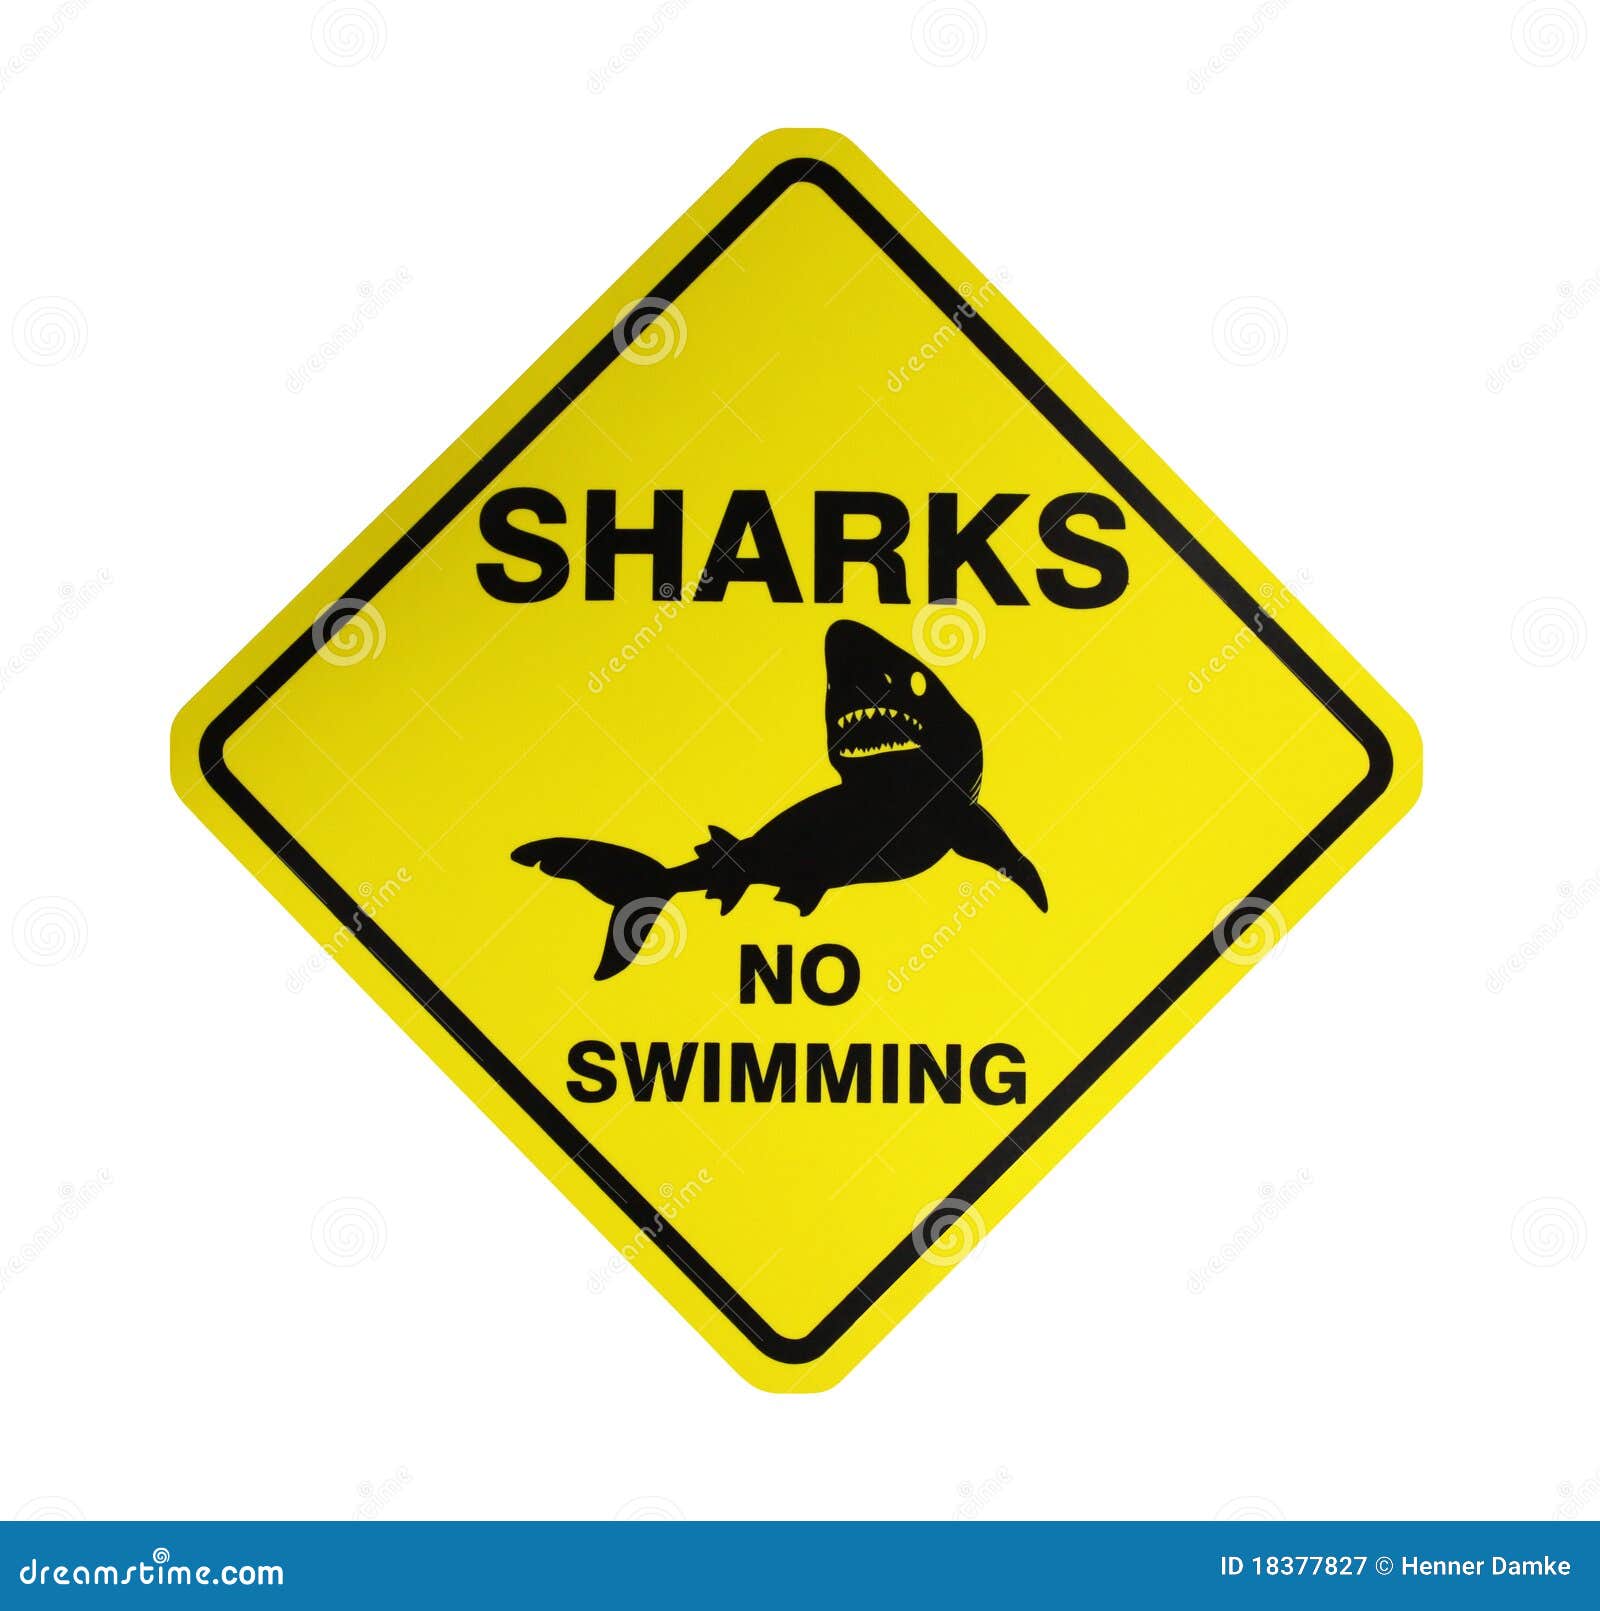 sharks-warning-sign-18377827.jpg